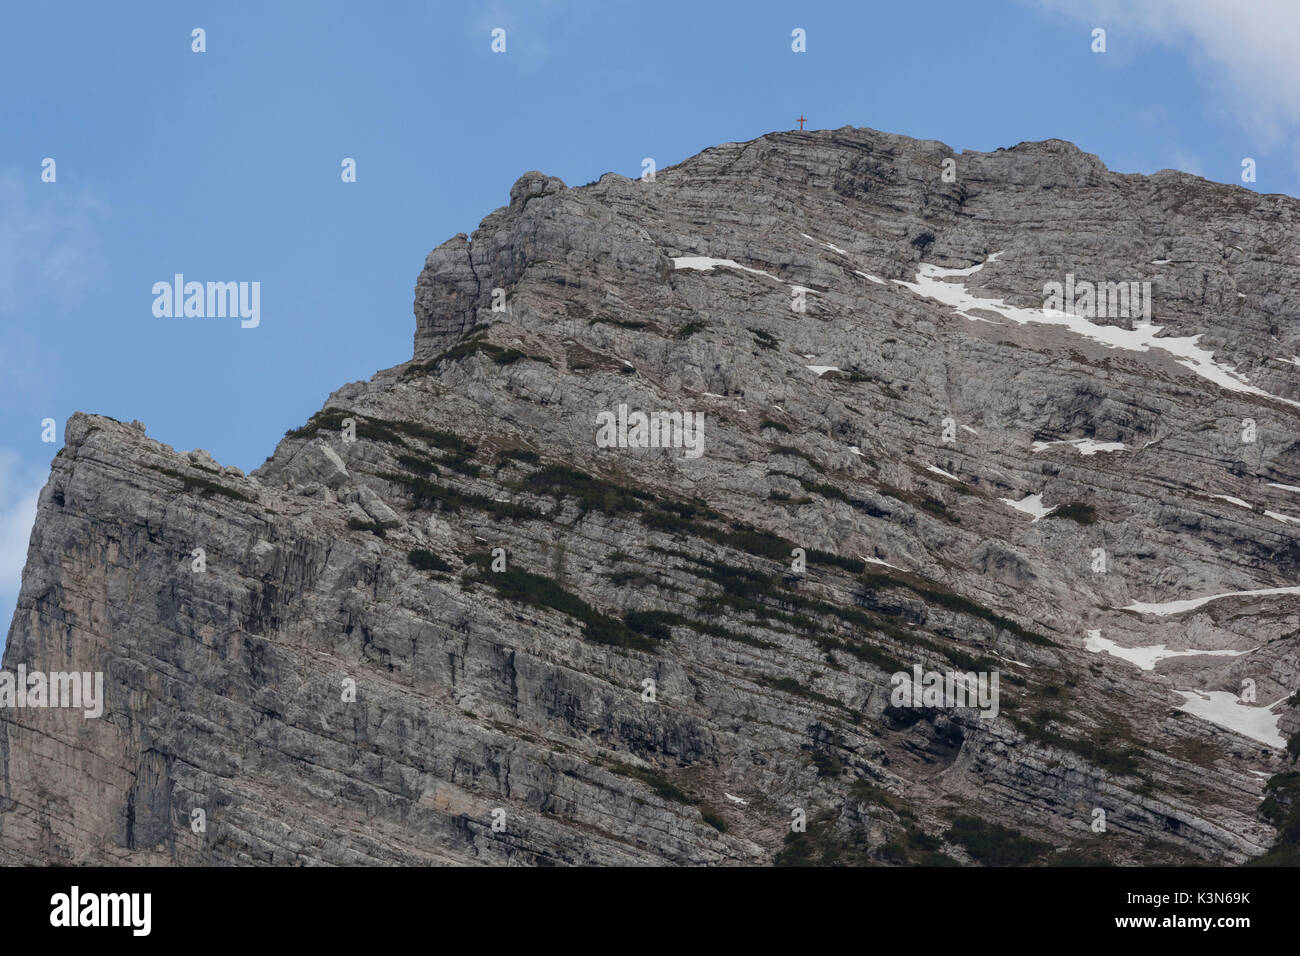 Il lato nord del Piz de Mezodi', chiamato anche Zima de la Cros (picco della croce) Monti del Sole, Parco Nazionale Dolomiti Bellunesi Foto Stock